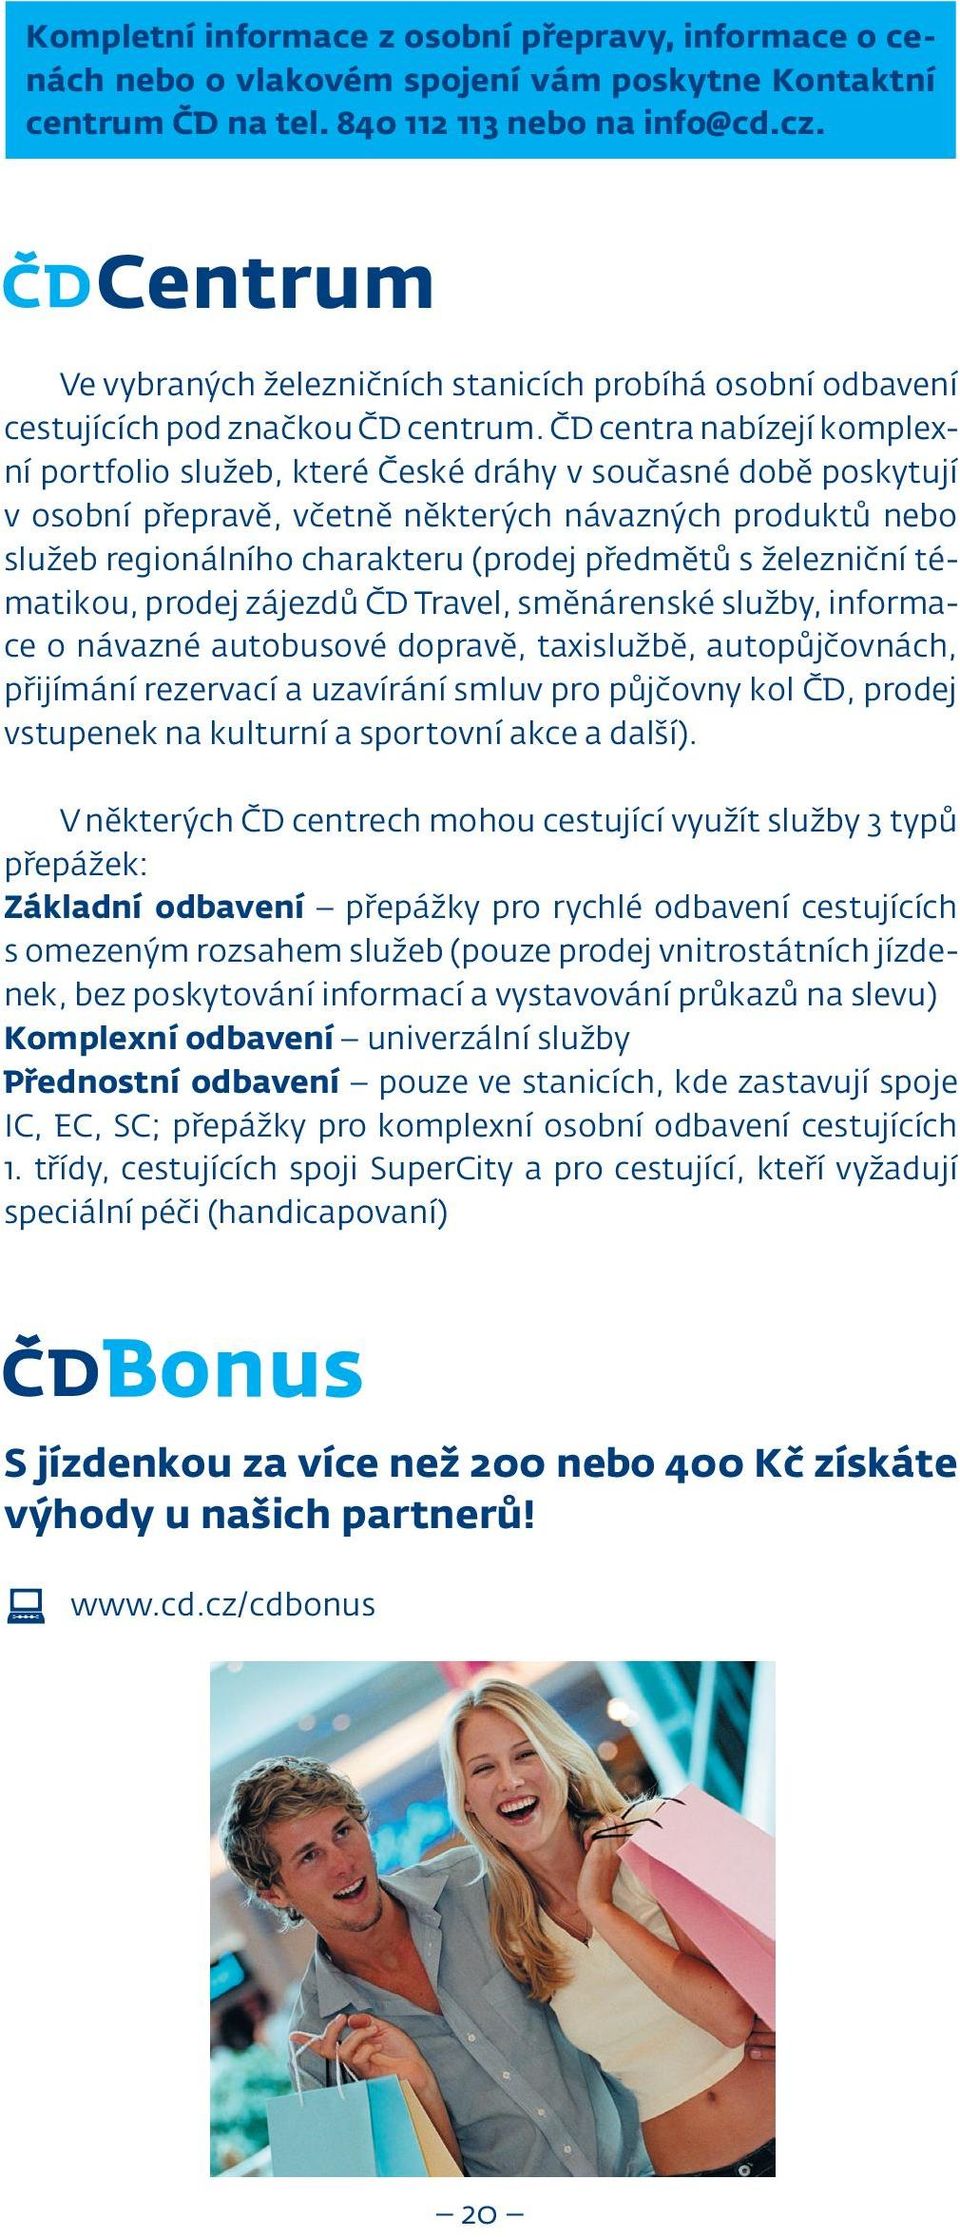 ČD centra nabízejí komplexní portfolio služeb, které České dráhy v současné době poskytují v osobní přepravě, včetně některých návazných produktů nebo služeb regionálního charakteru (prodej předmětů